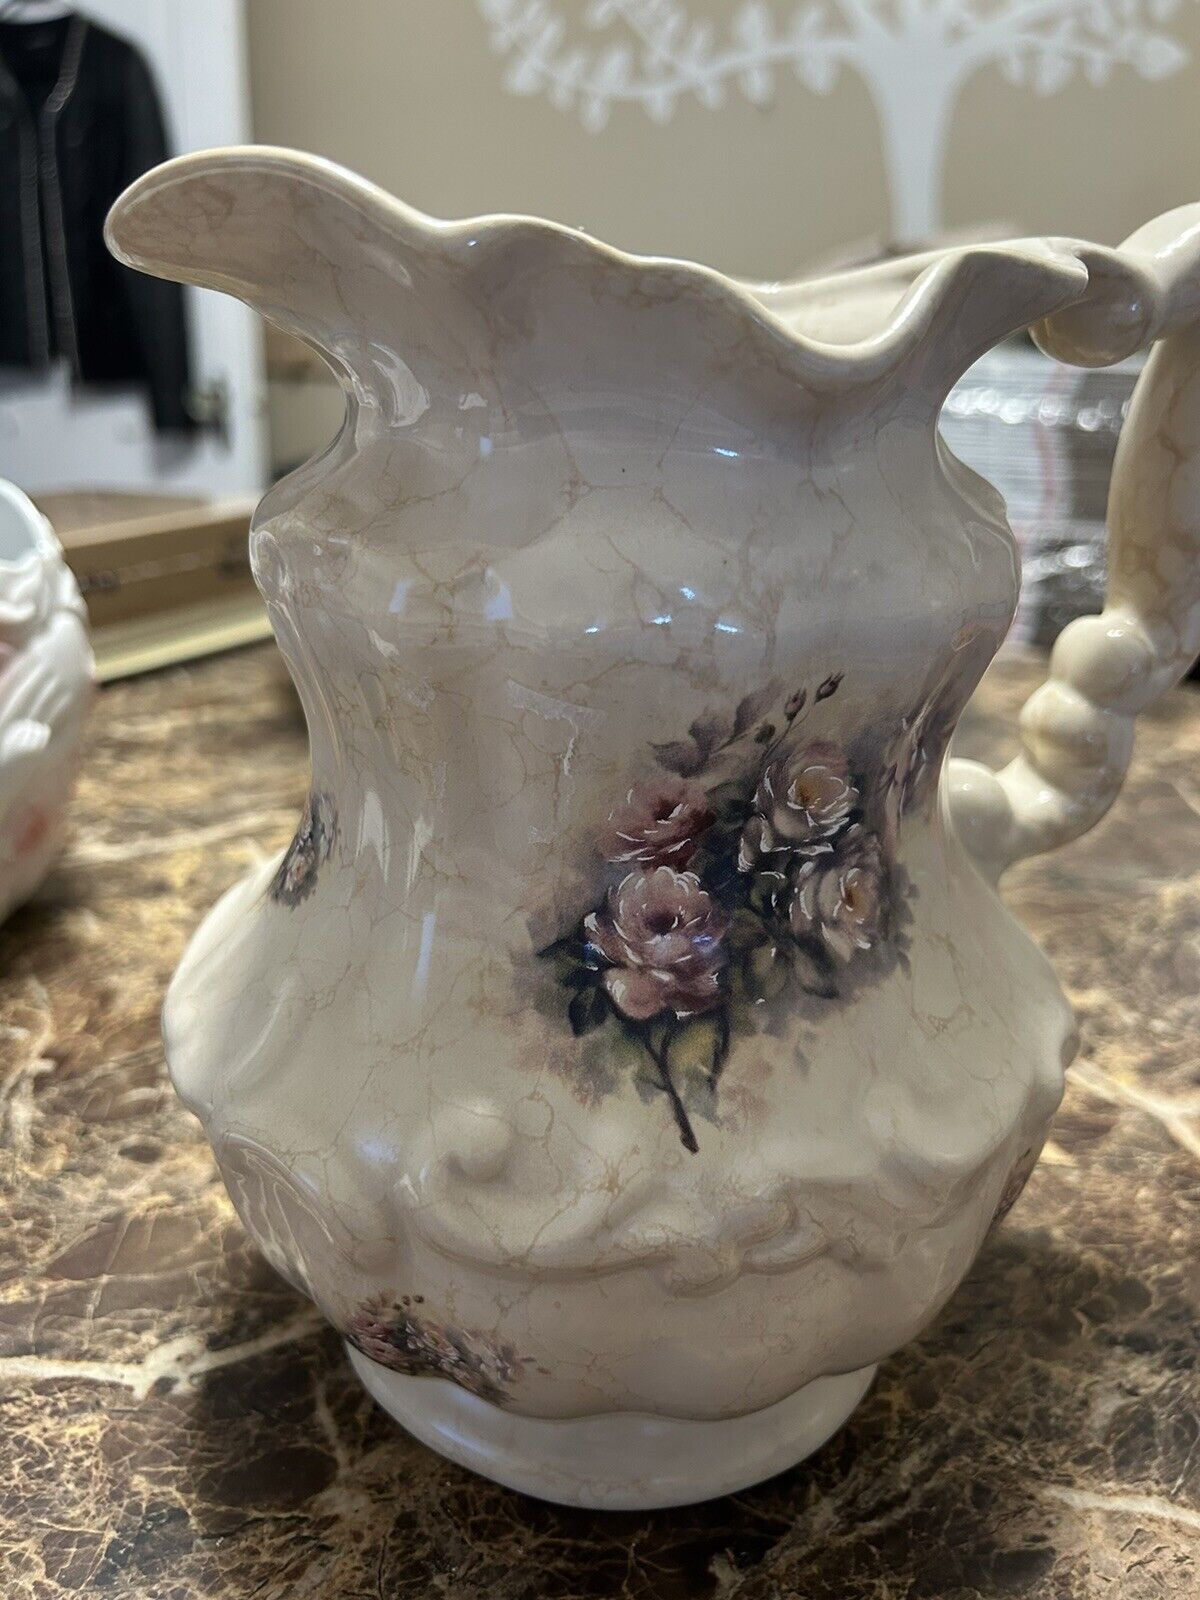 VTG. TH Athena Ceramic Porcelain Large Pitcher Floral Pattern Pink Flowers USA